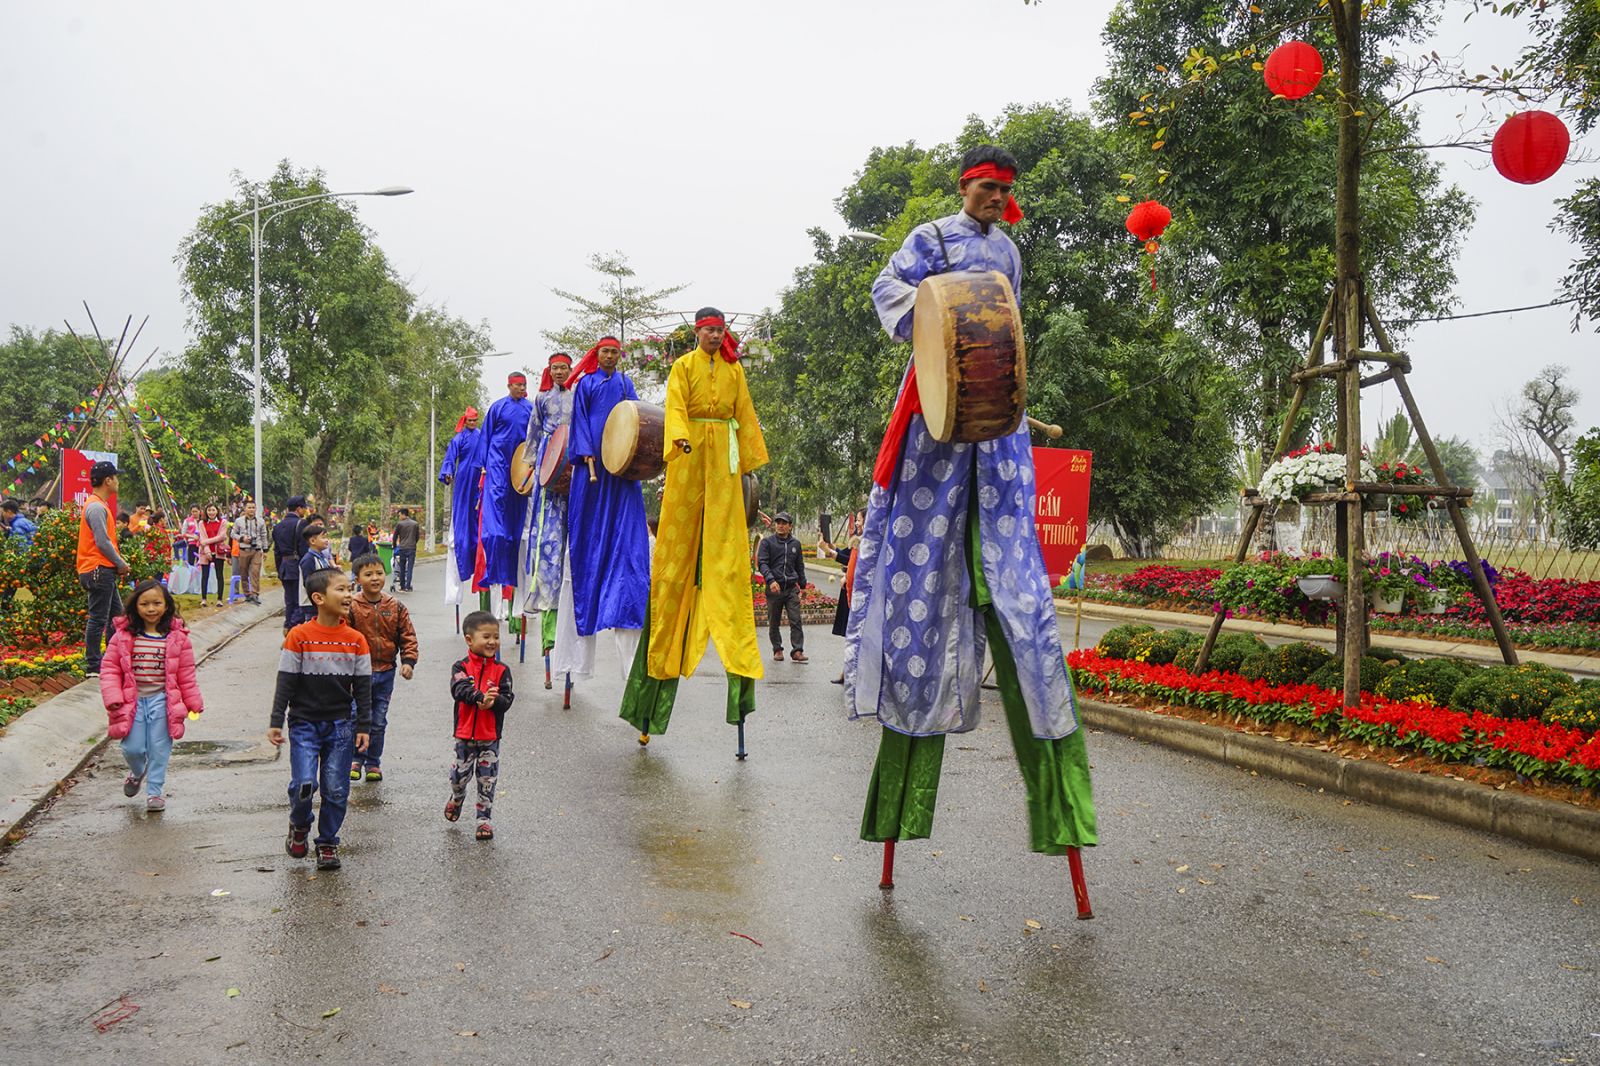 Lễ hội đi Cà Kheo nhân dịp Tết năm 2018 tại Ecopark.